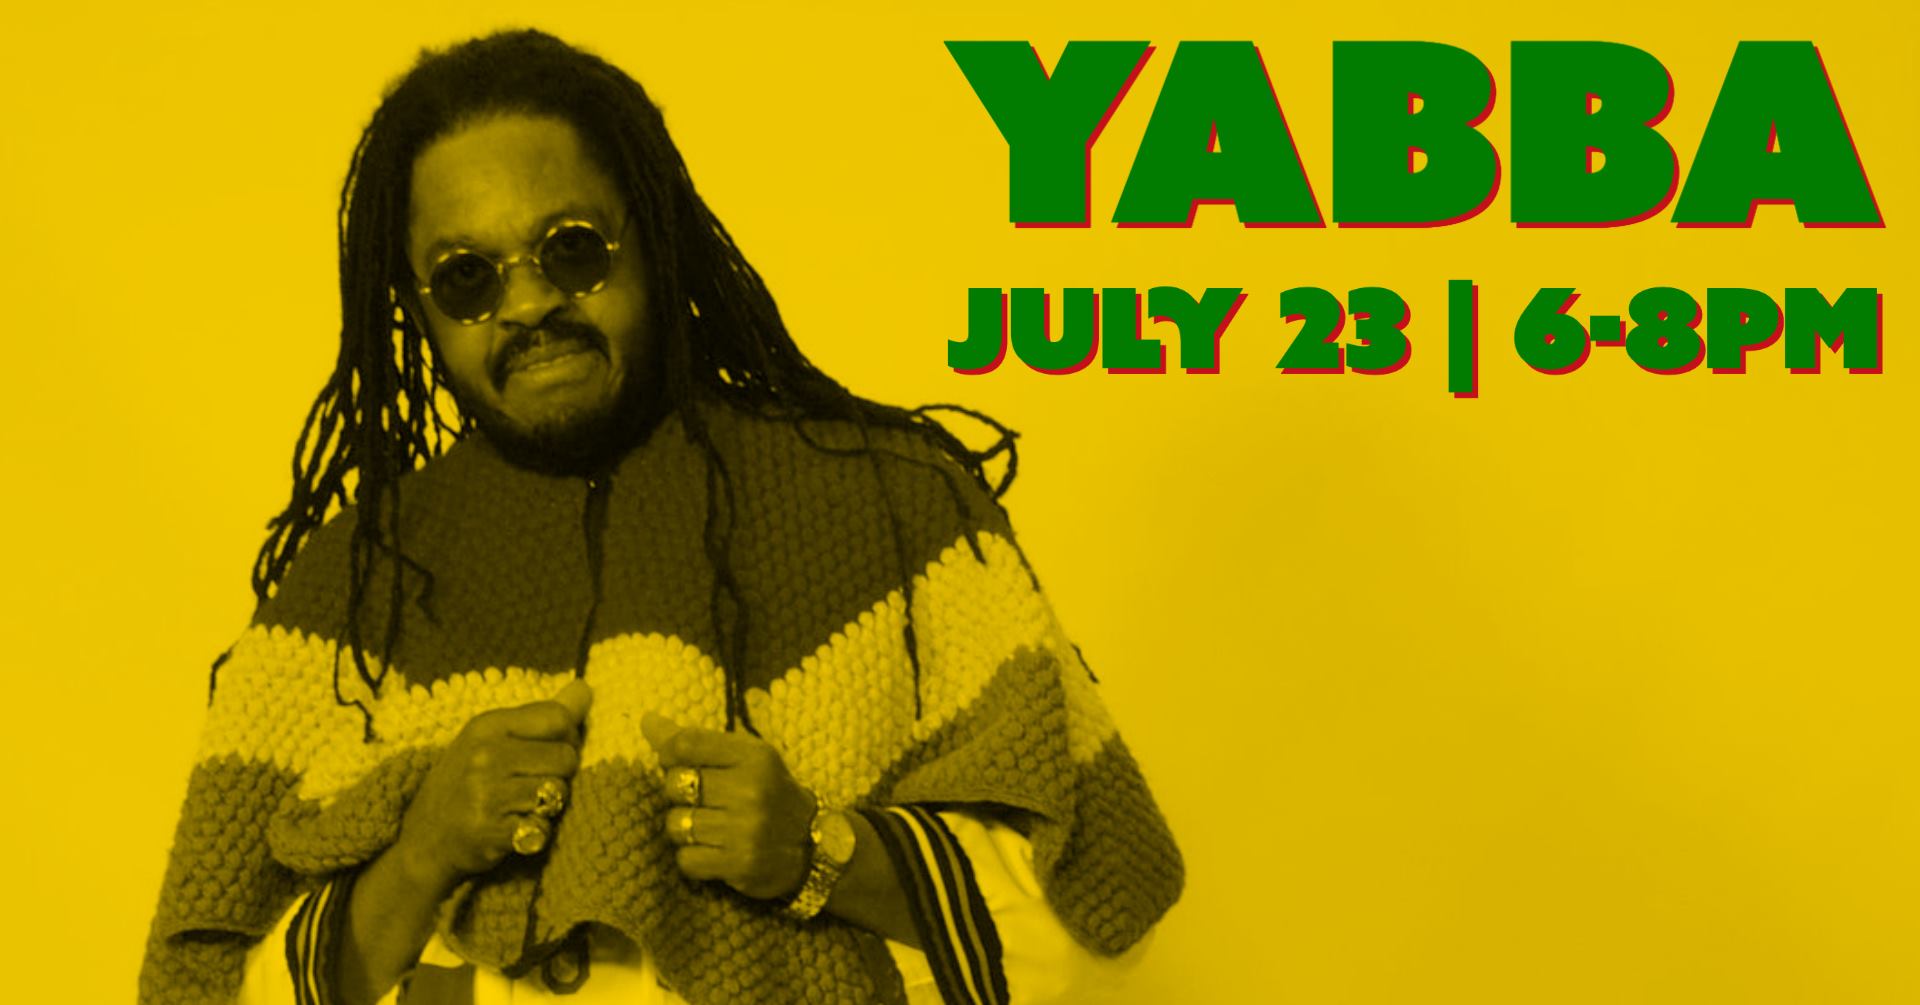 Yabba! The Hardest Working Man in Reggae